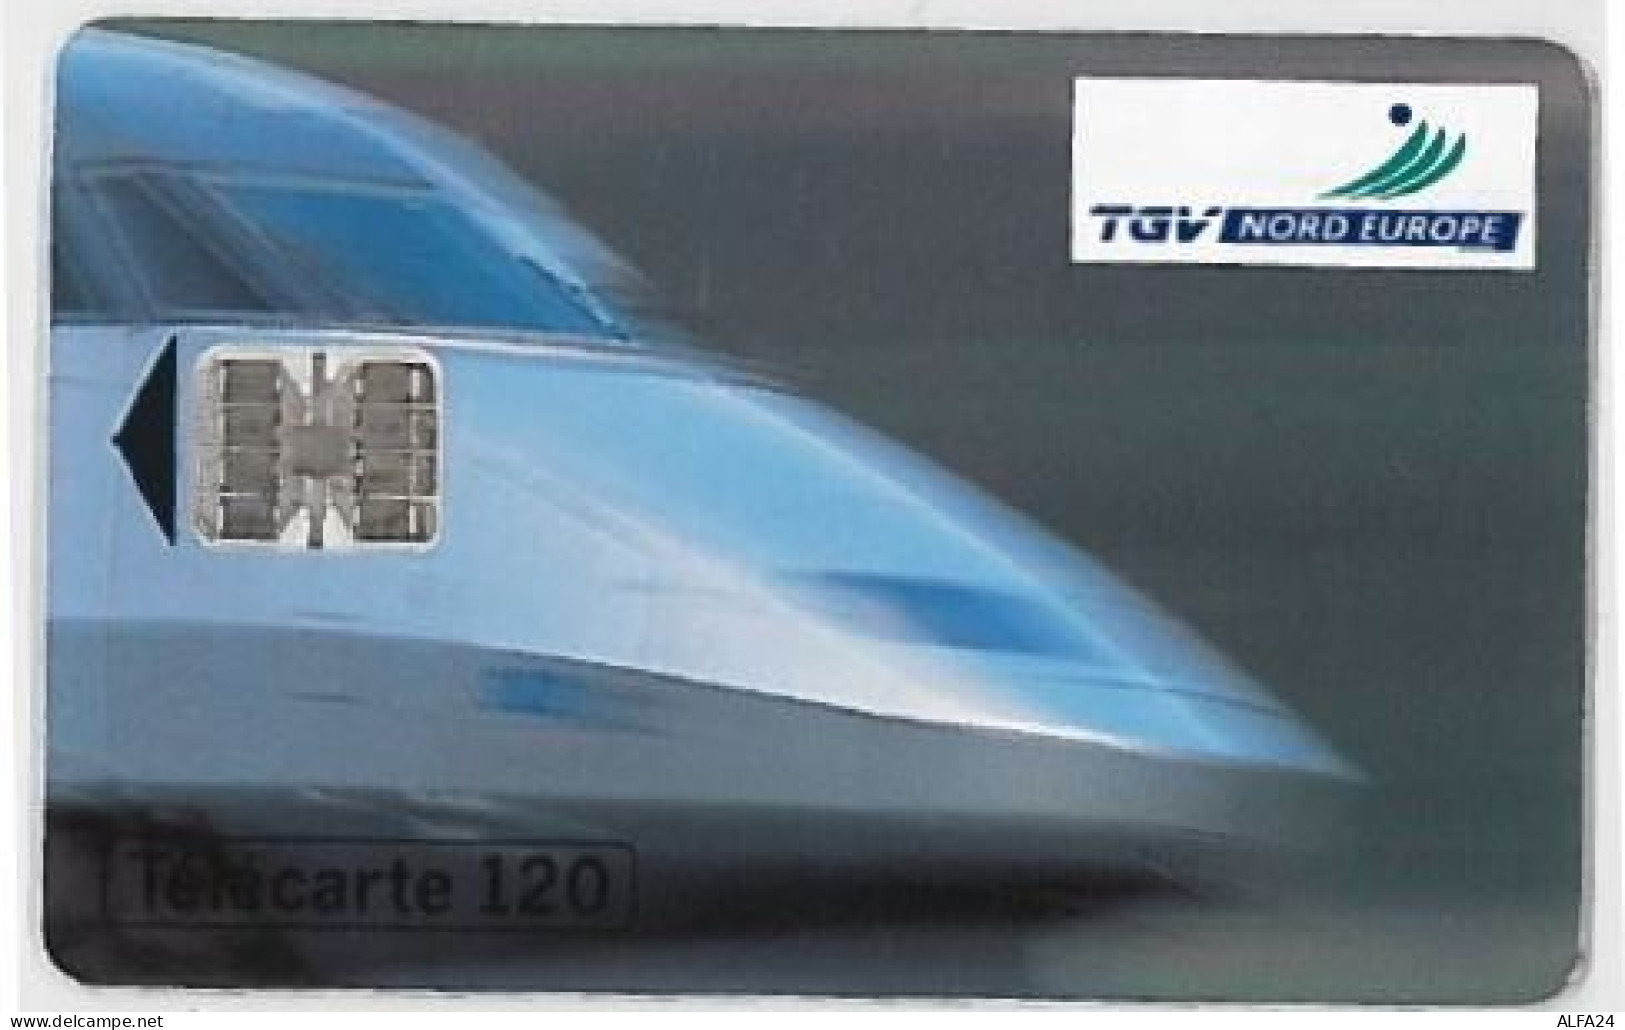 TELECARTE F361 TGV EUROPE (2 - 1993